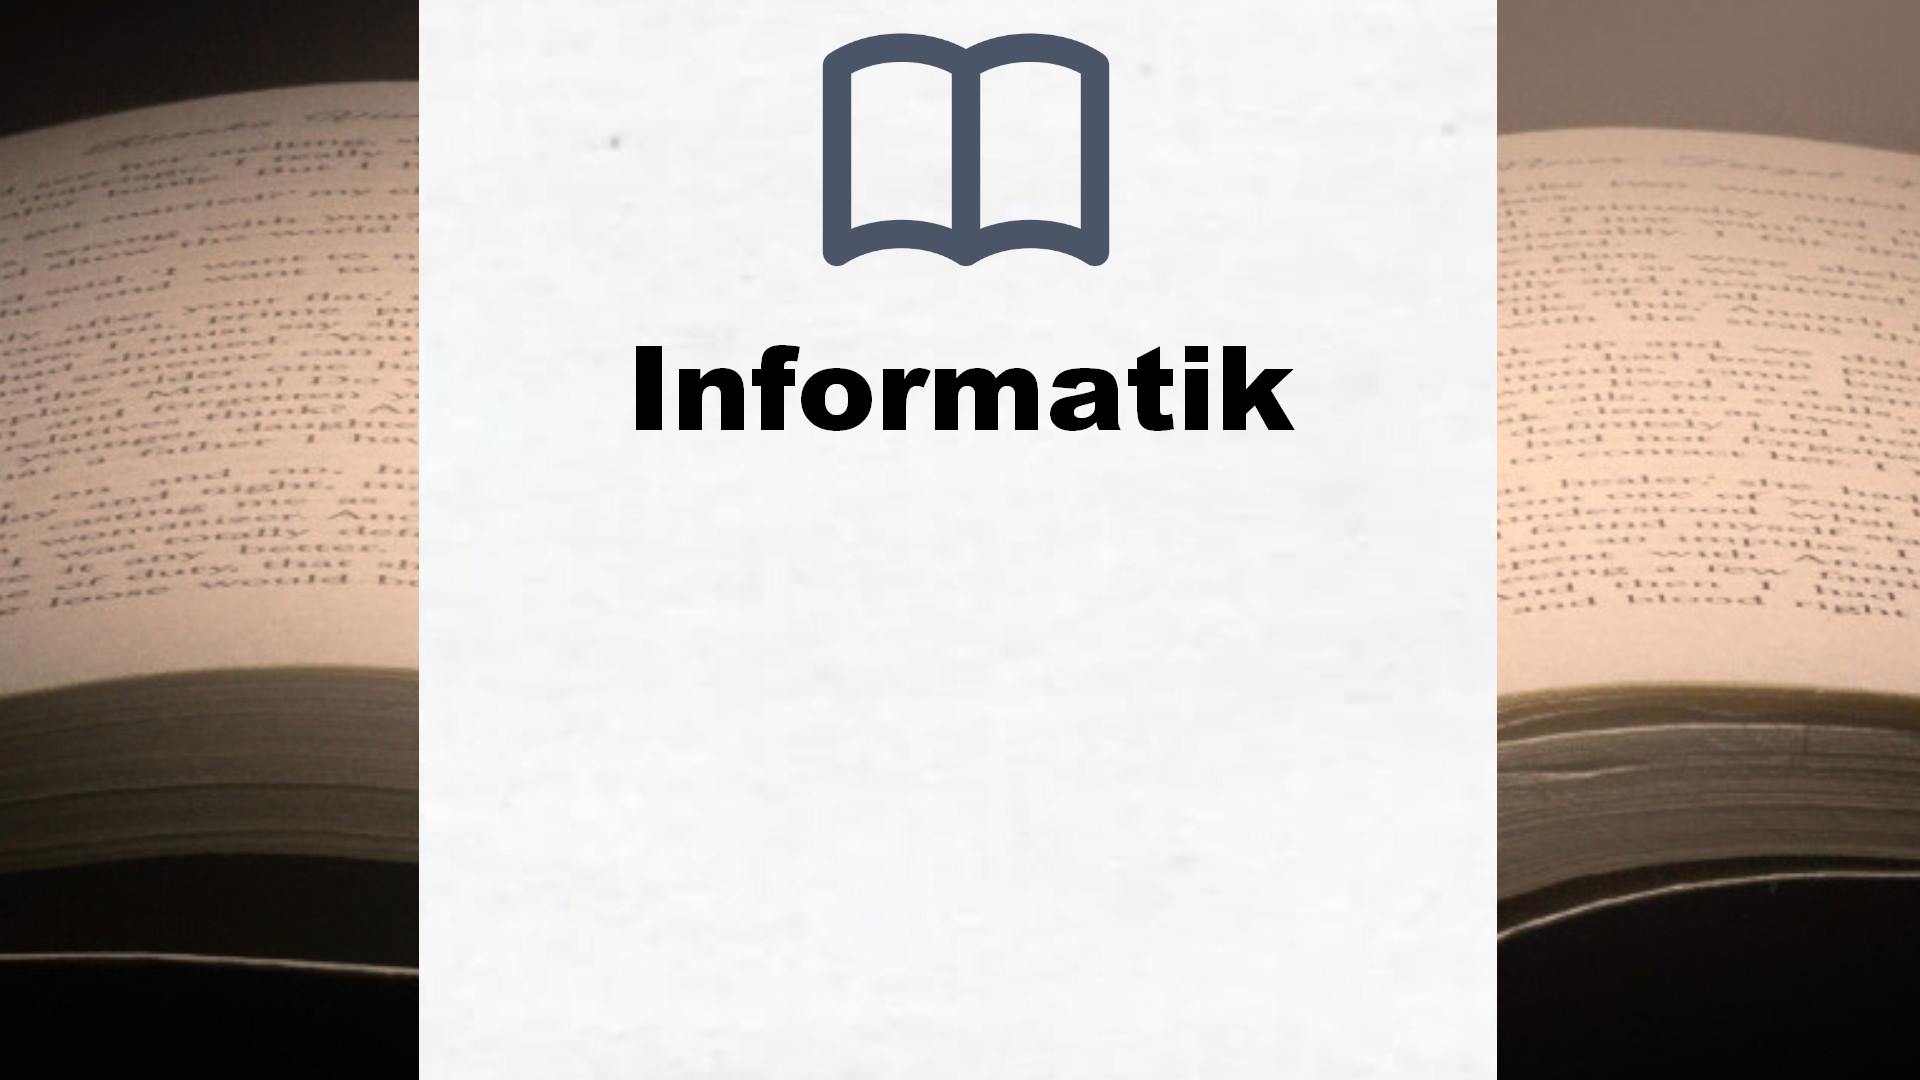 Bücher über Informatik